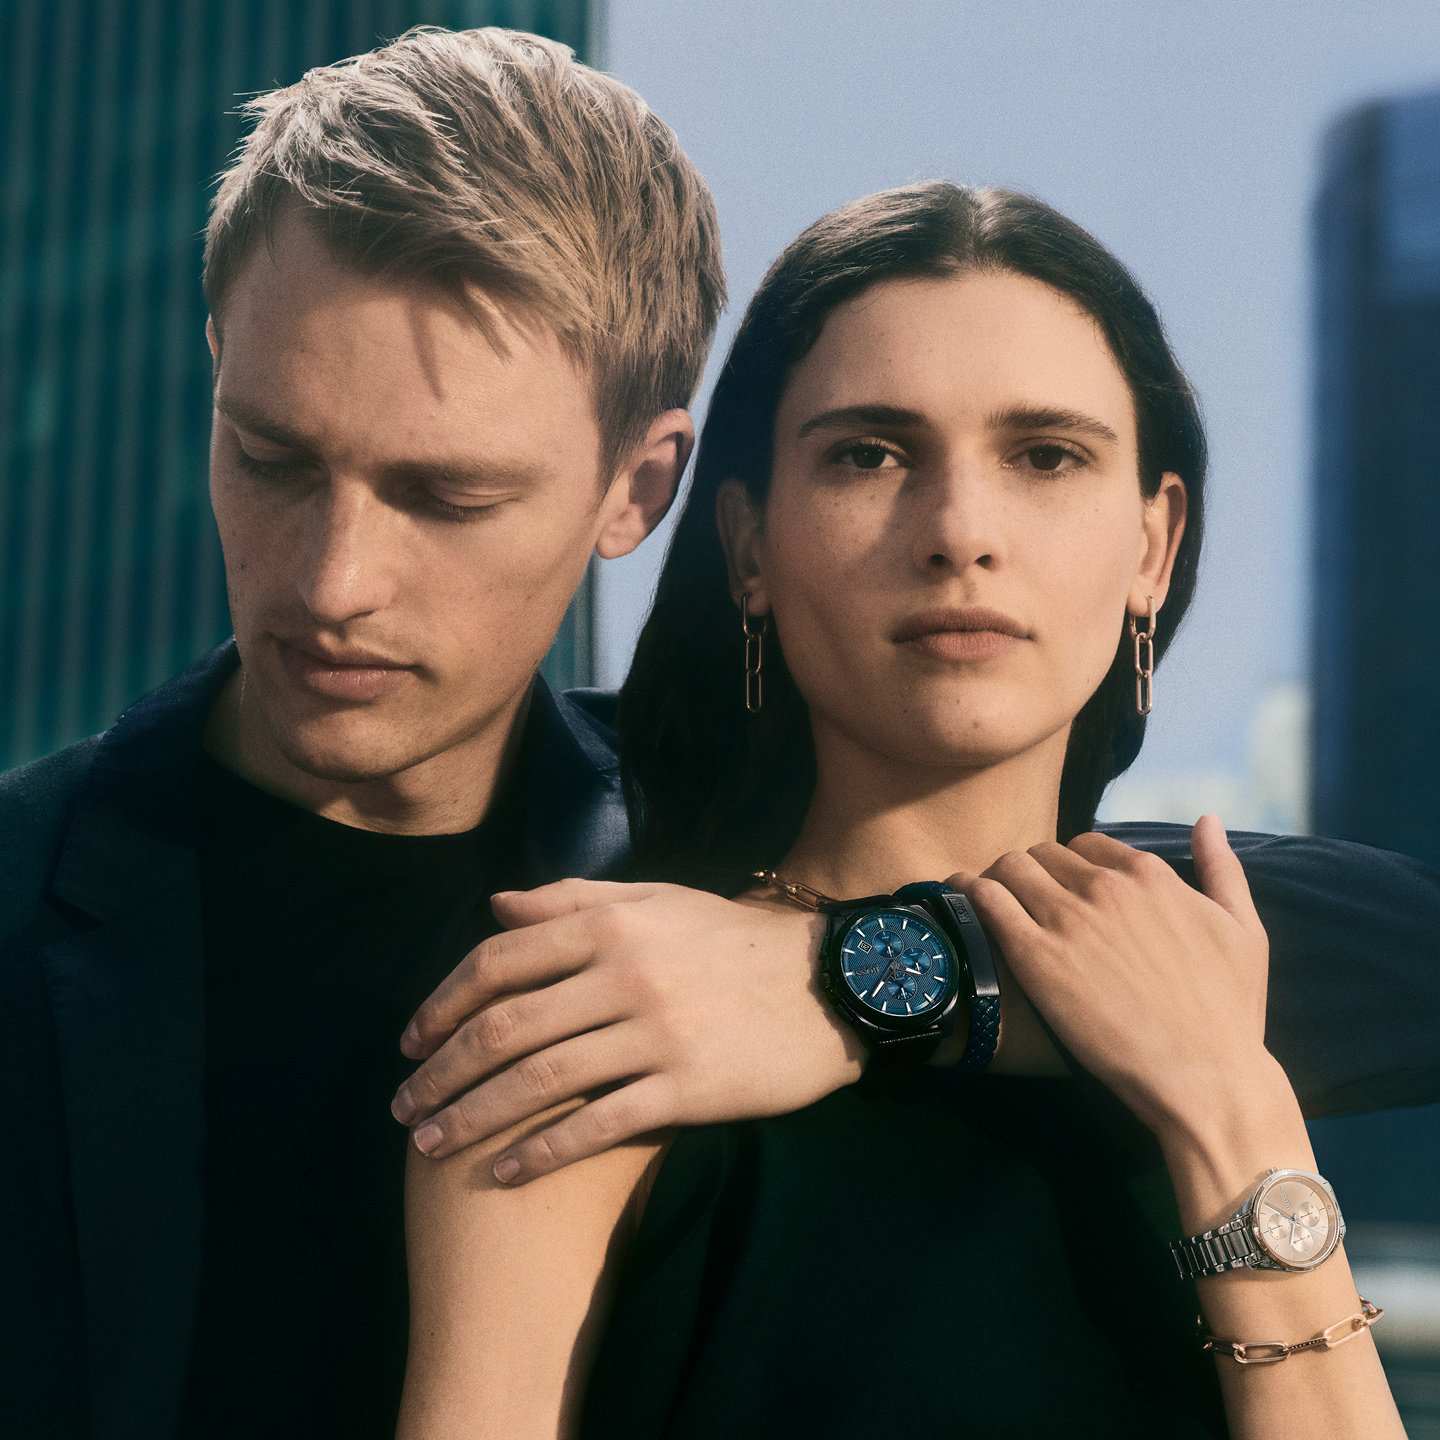 Hugo Boss / Boss Horloges en Sieraden   SALE - UITVERKOOP | Top merken met kortingen tot 70%